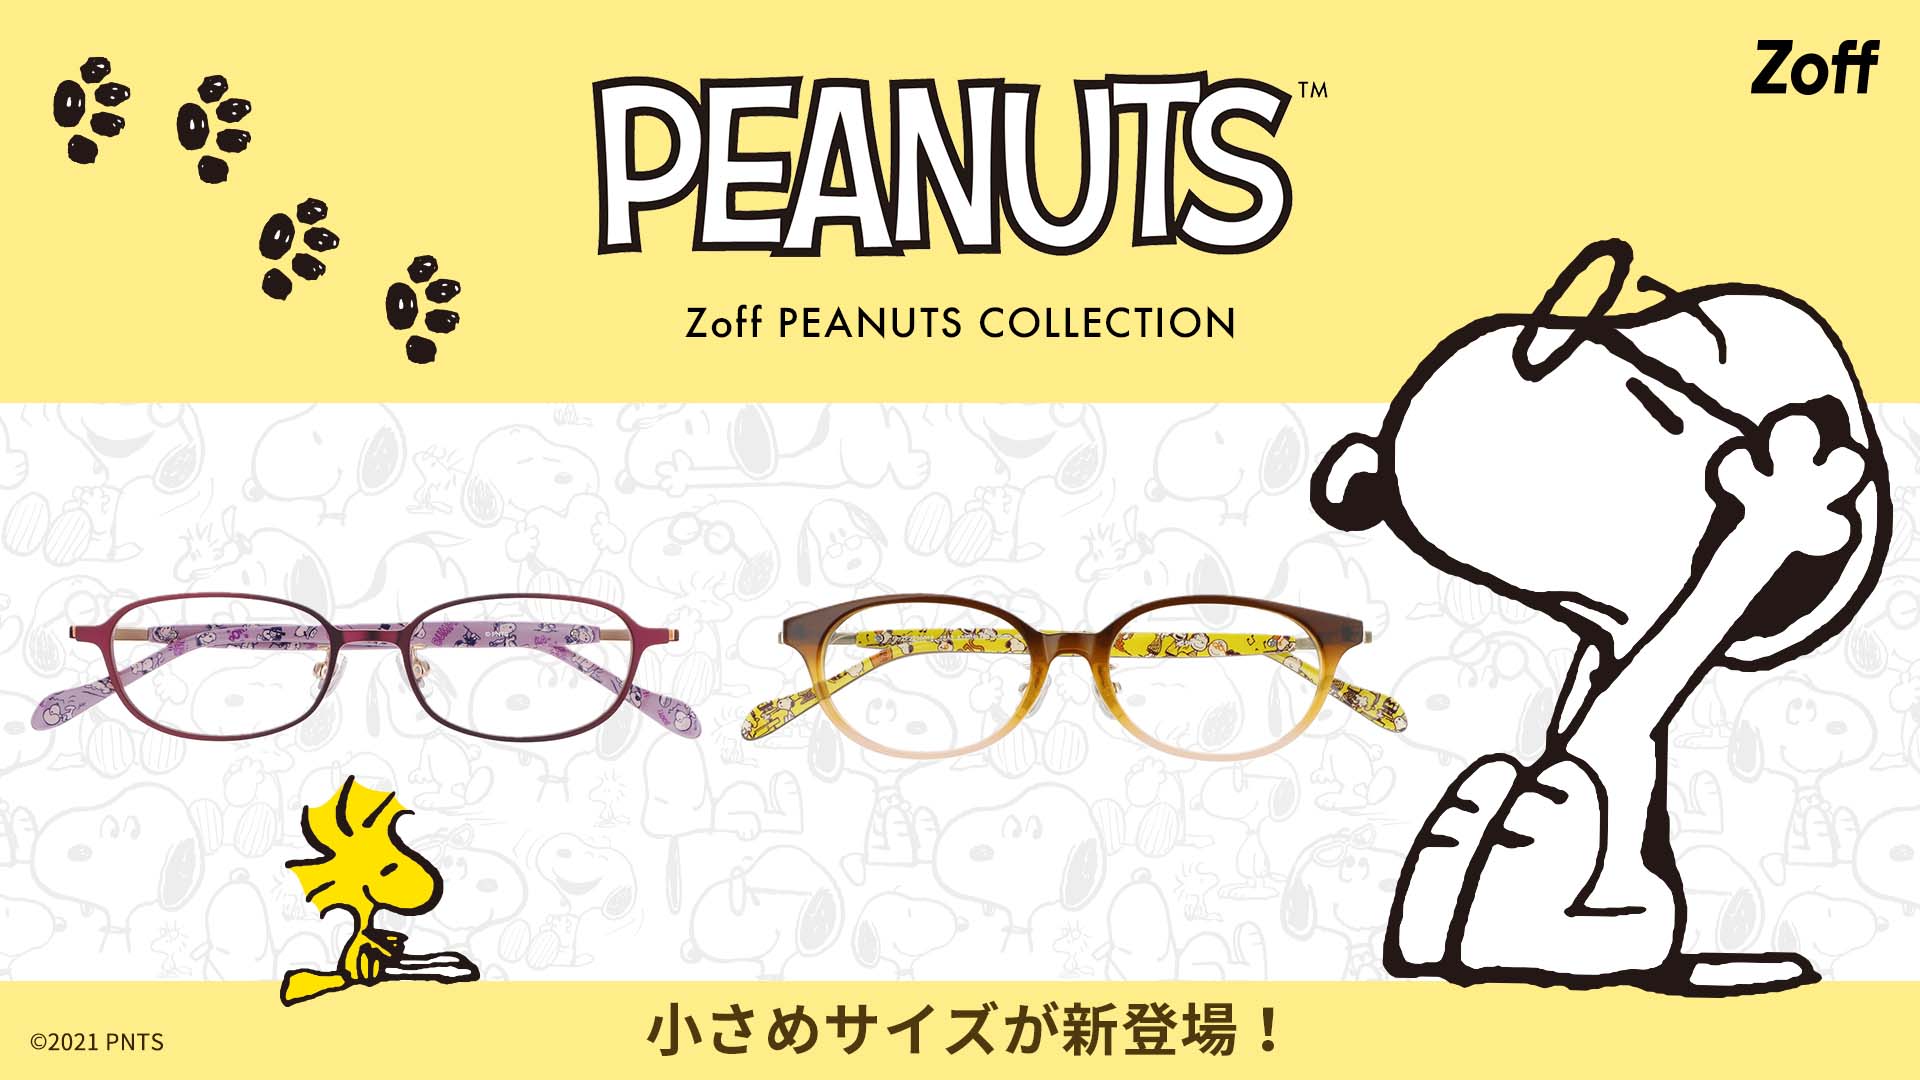 大人気の Zoff Peanuts Collection にkidsモデルが新登場 Zoffオリジナルのメガネを掛けたスヌーピー にも注目 株式会社インターメスティックのプレスリリース